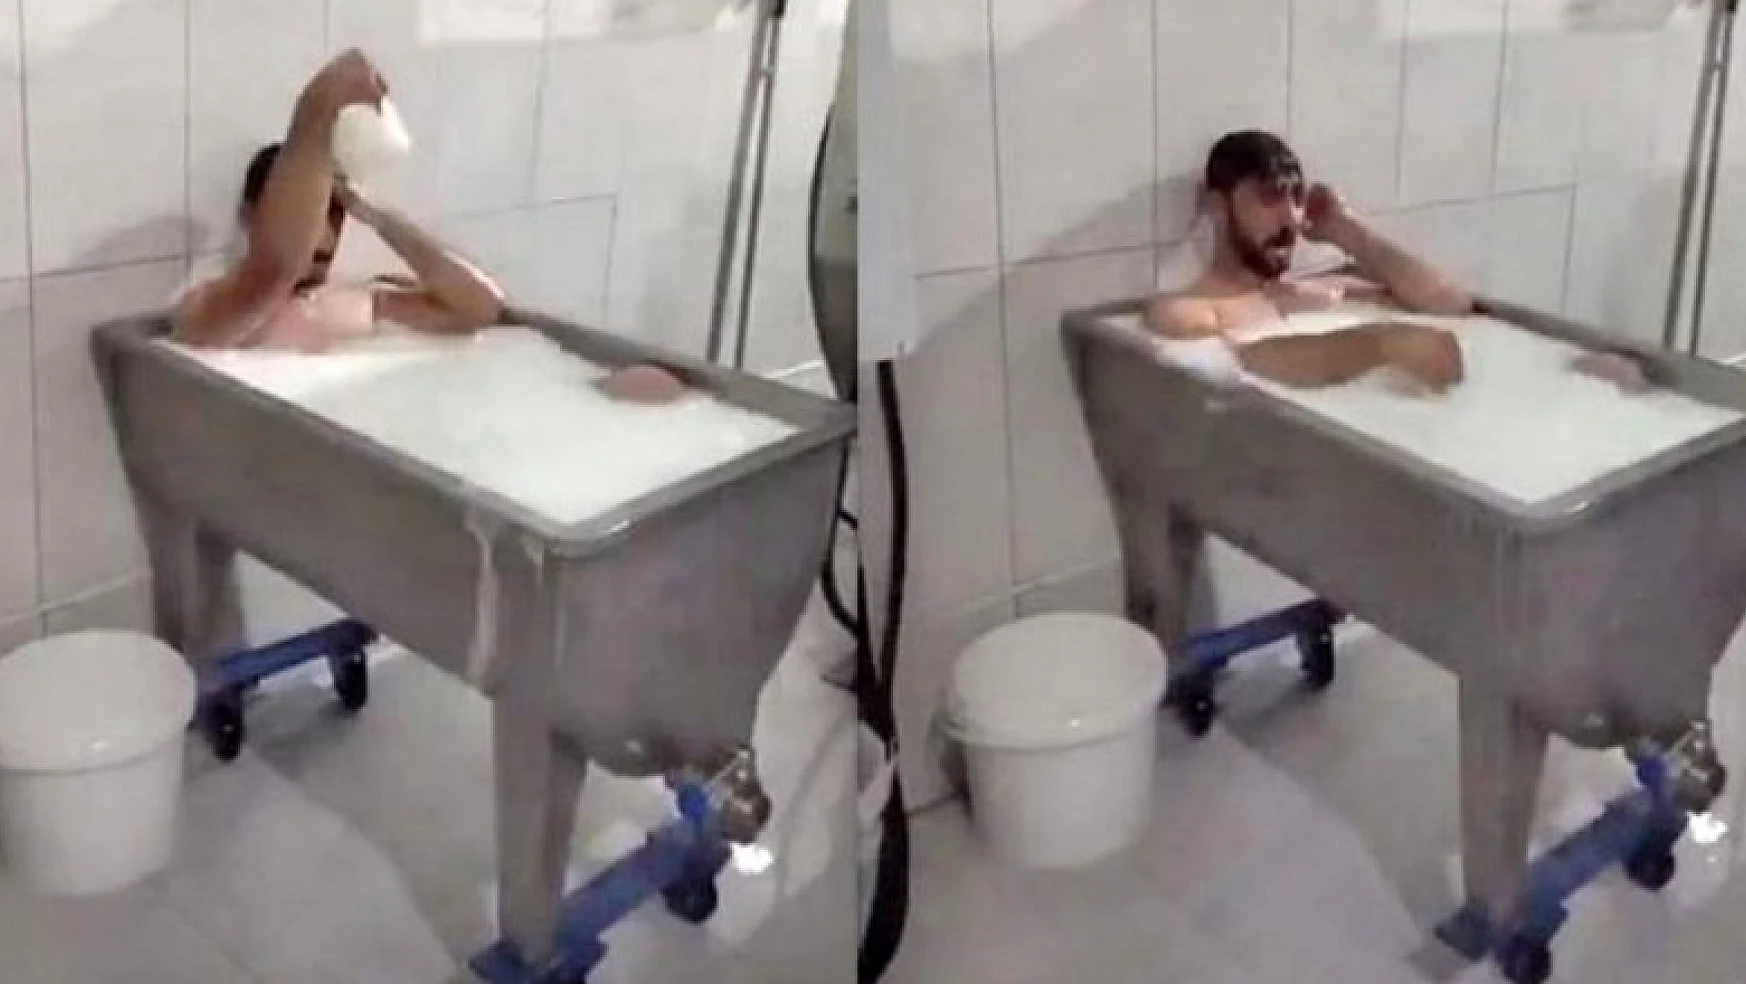 Konya'daki 'süt banyosu' olayında sanığın yargılaması sürüyor